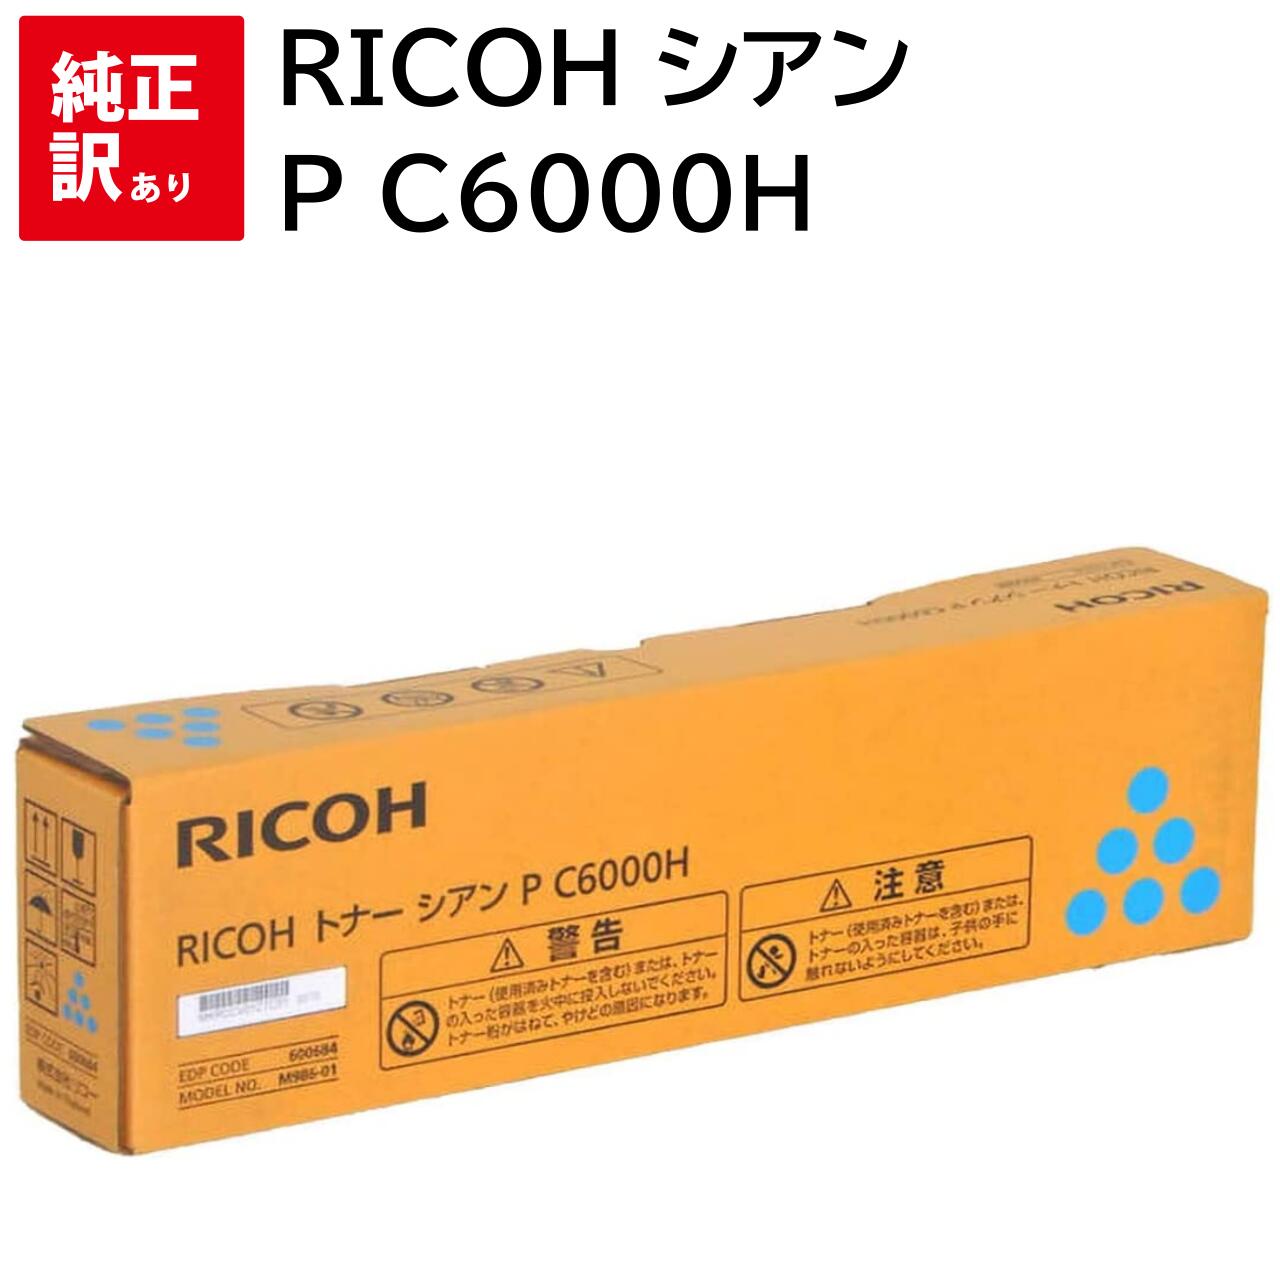 訳あり 新品 RICOH P C6000H シアン 600684 リコー トナー